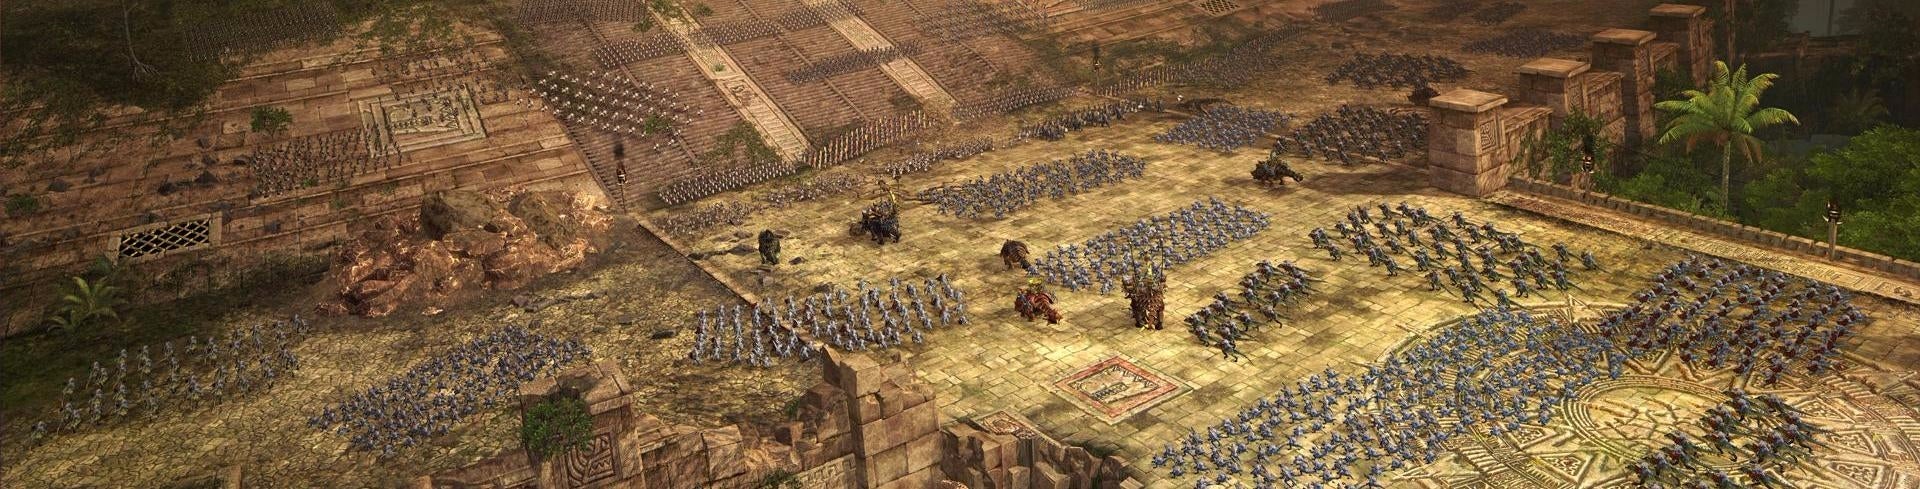 Image for E3 DOJMY z Total War: Warhammer 2